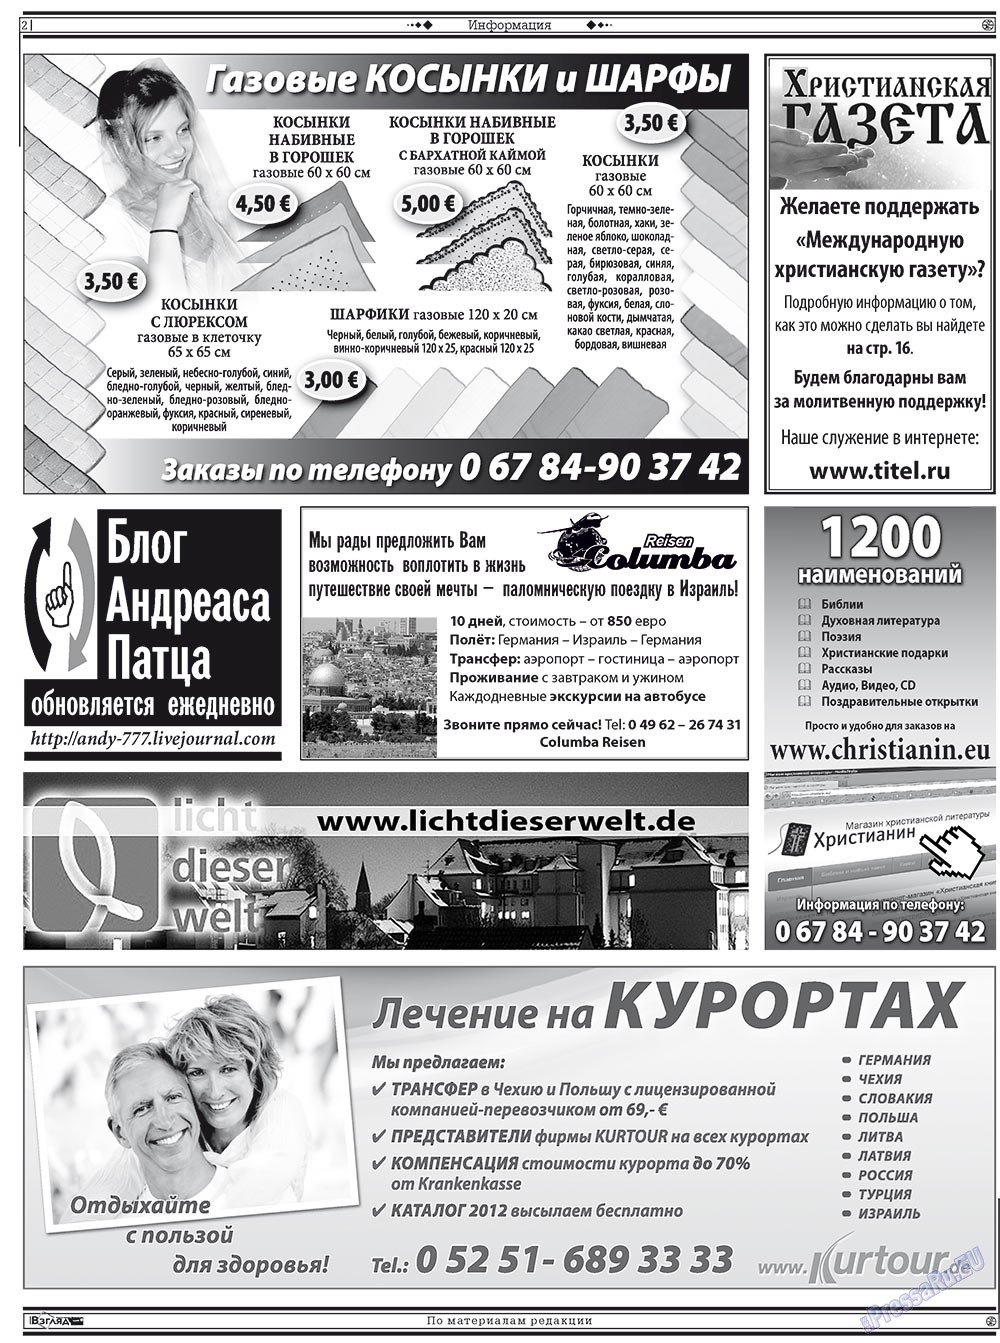 Христианская газета, газета. 2012 №5 стр.16